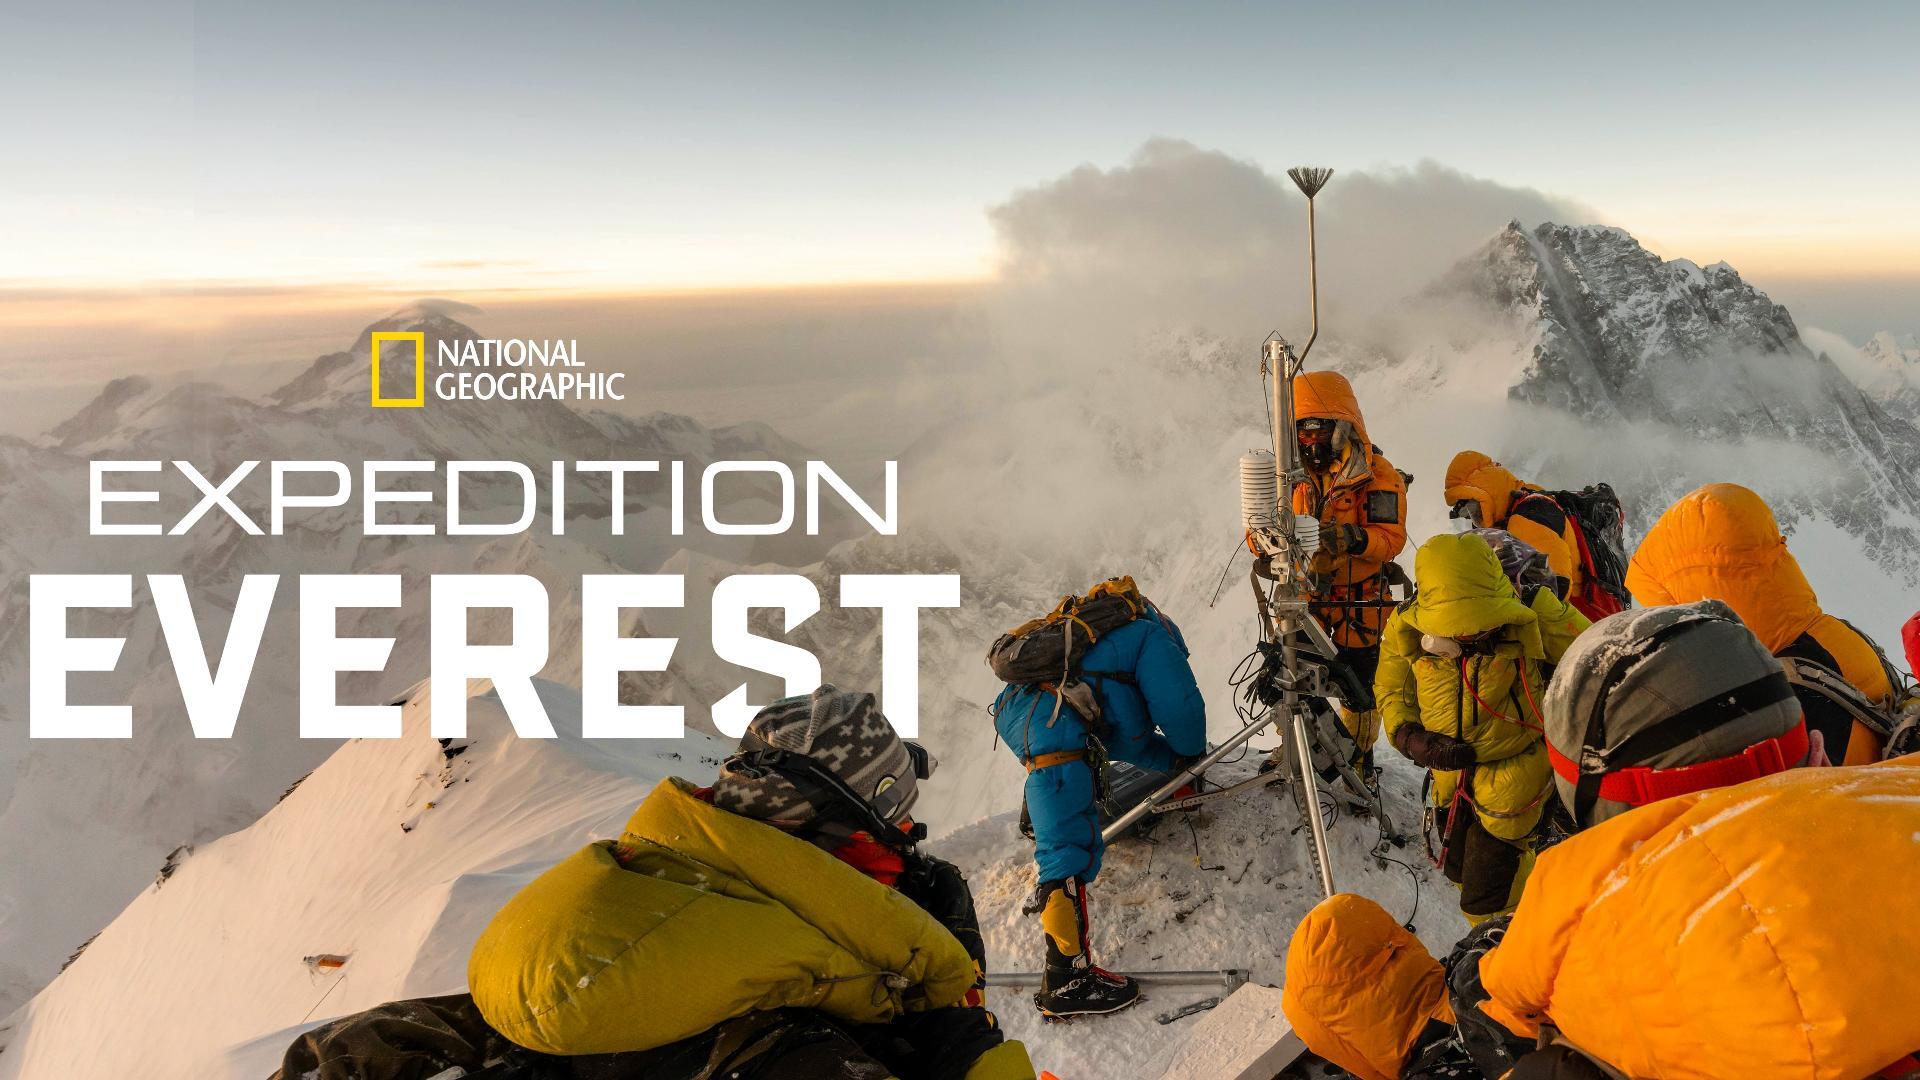 ექსპედიცია ევერესტი / Expedition Everest